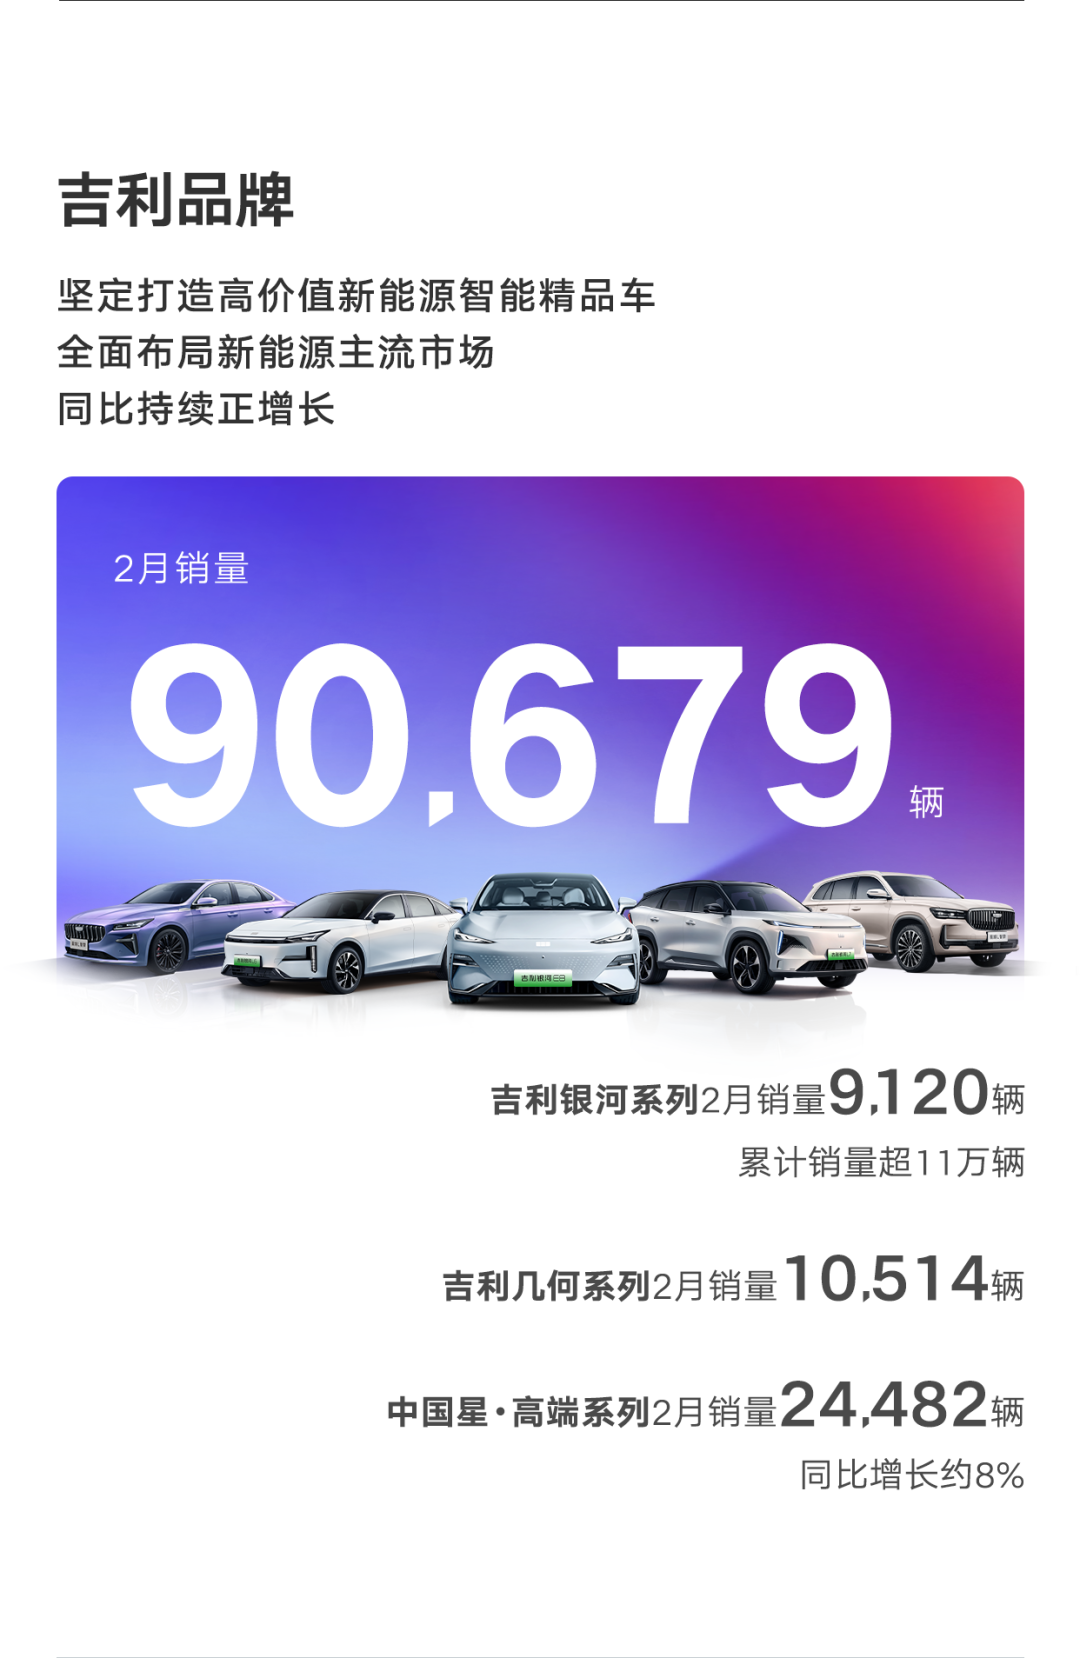 吉利汽车2月销量111398辆，新能源增速稳健同比增长约48%